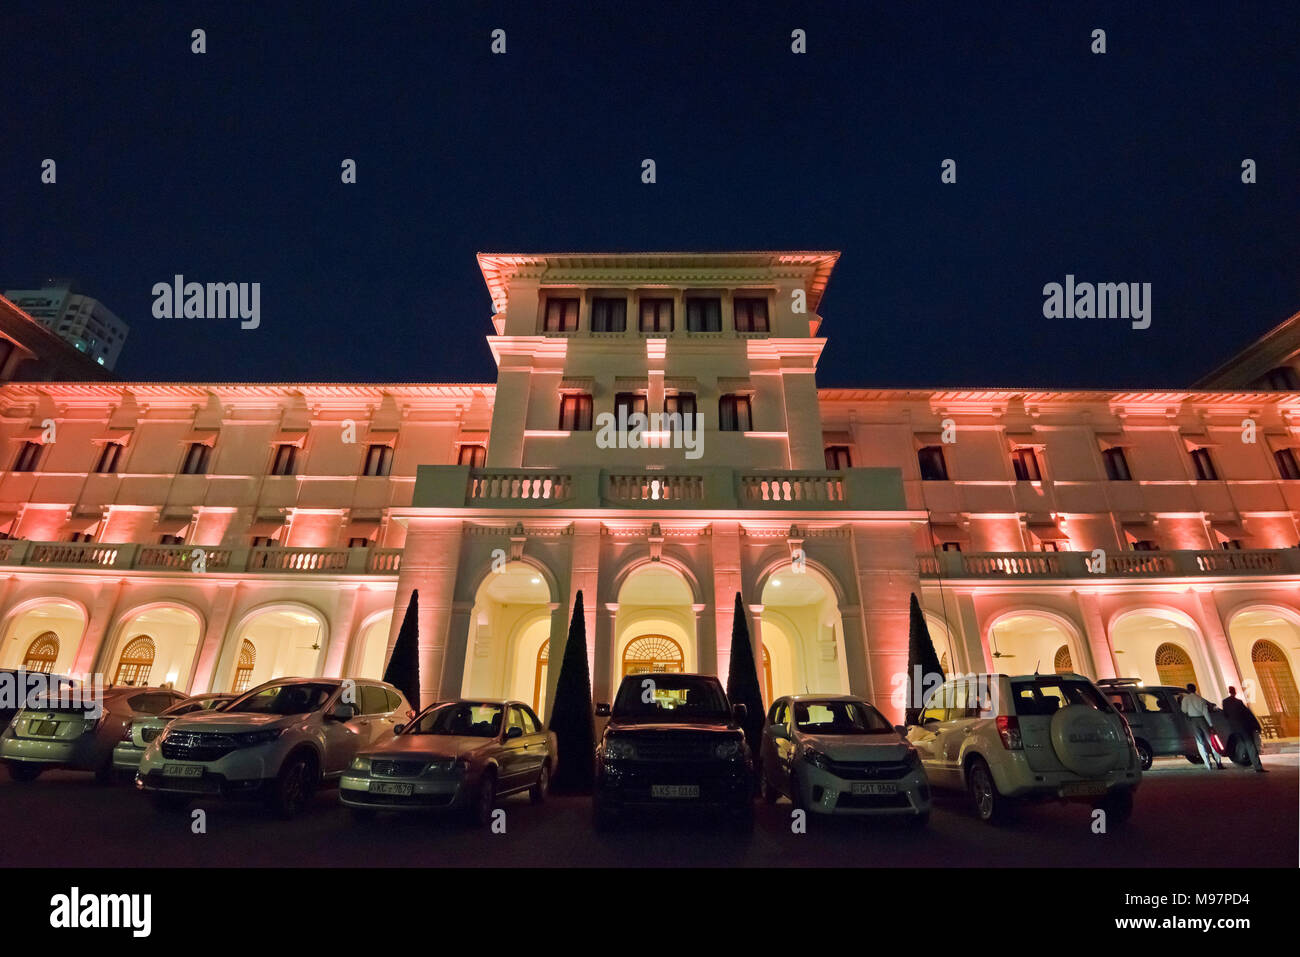 Vue horizontale de la Galle Face Hôtel à la nuit à Colombo, Sri Lanka. Banque D'Images